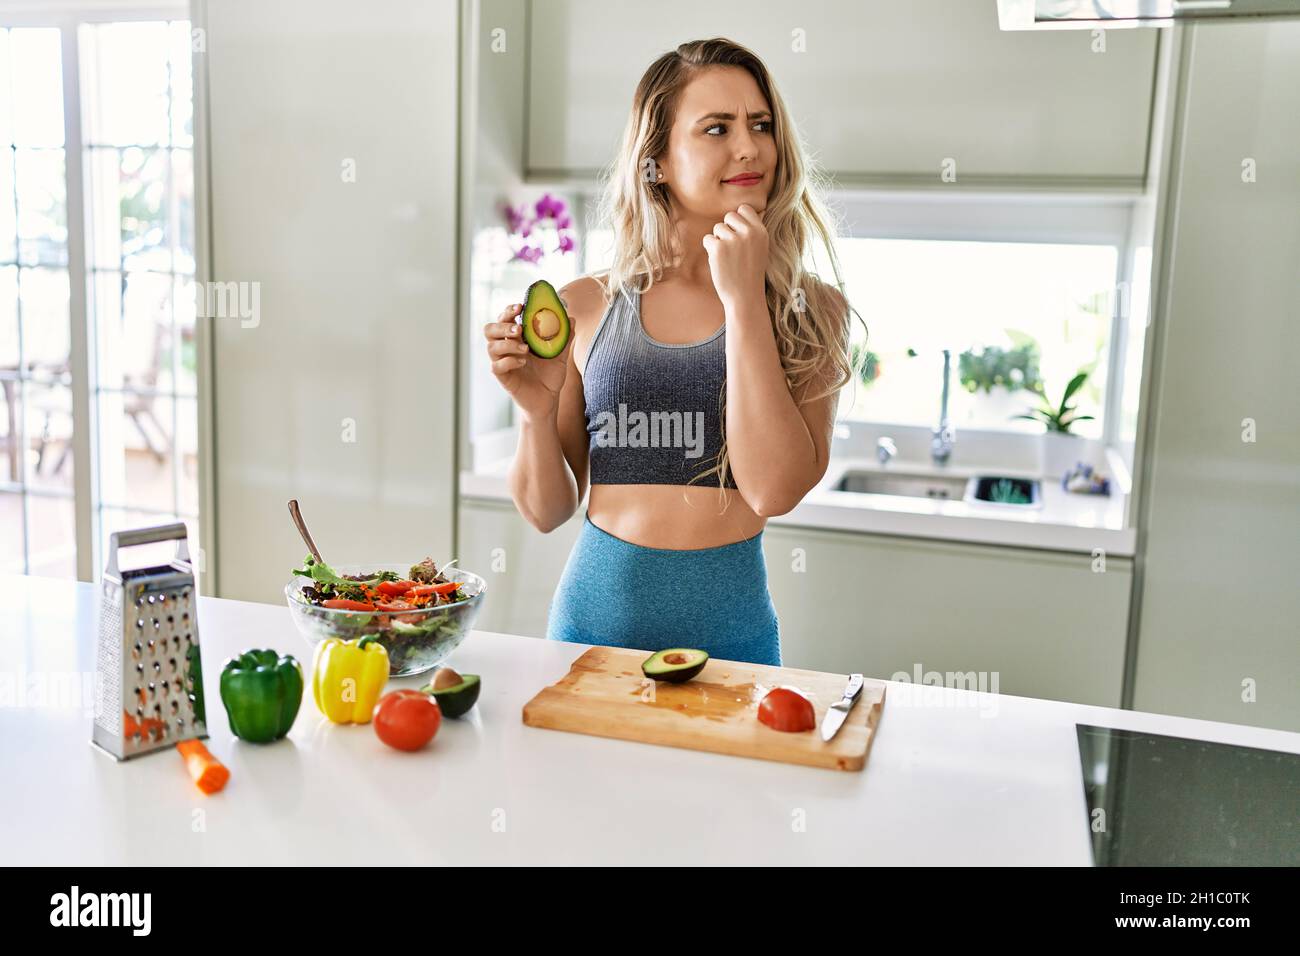 Joven mujer de fitness con ropa deportiva preparando ensalada saludable en la cocina seria cara la pregunta con la mano en barbilla, sin embargo Fotografía de stock -